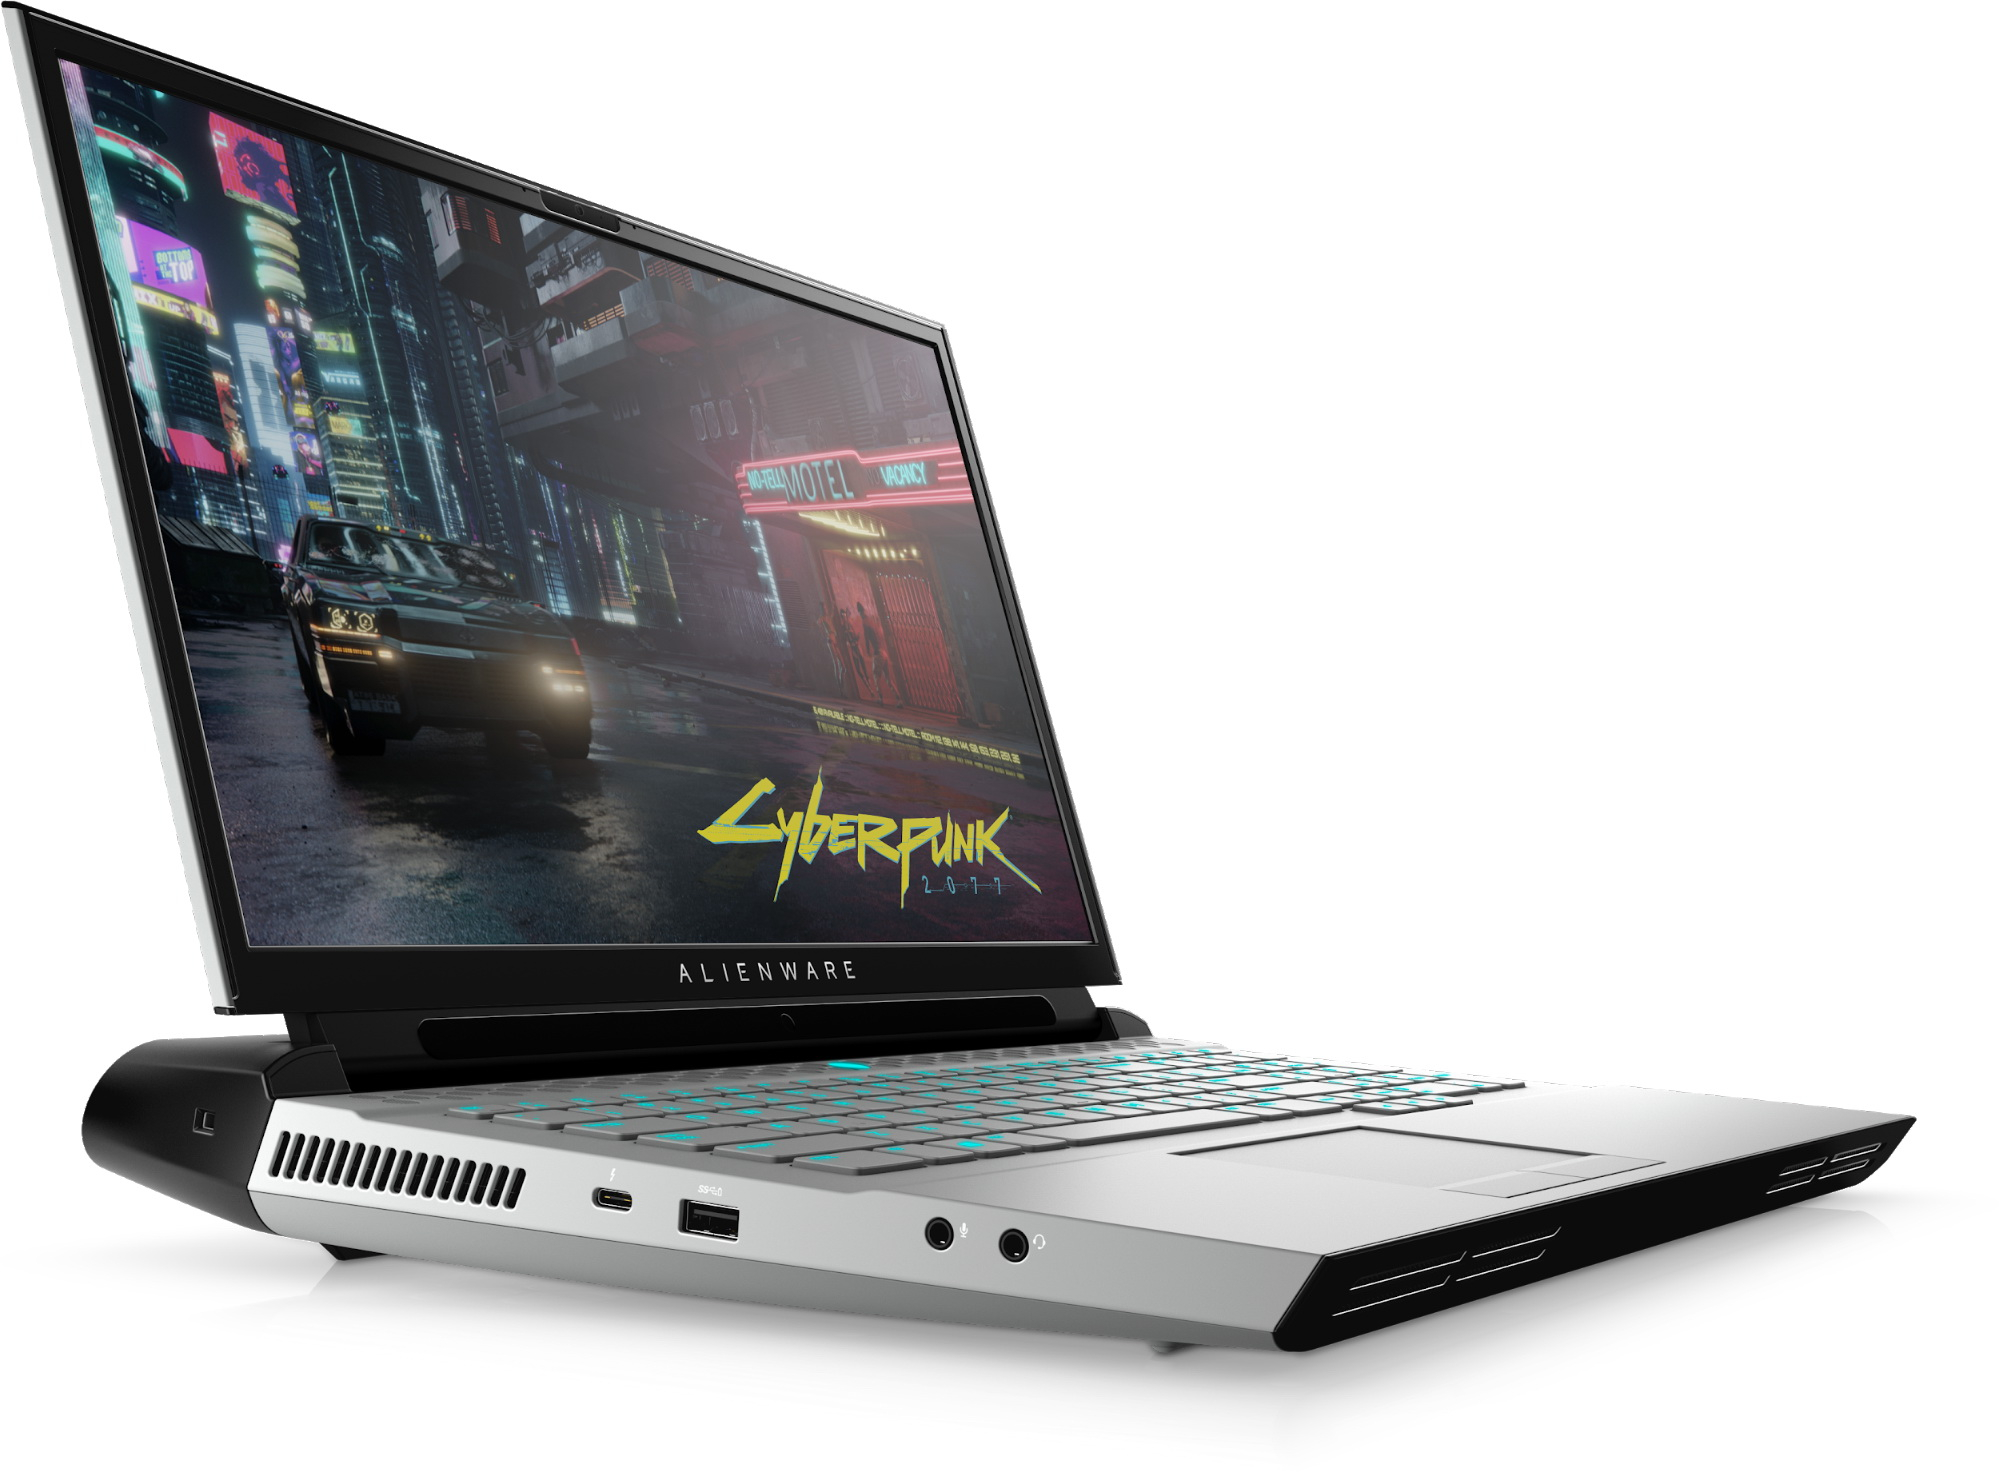 Игровой Ноутбук Alienware M18x Купить